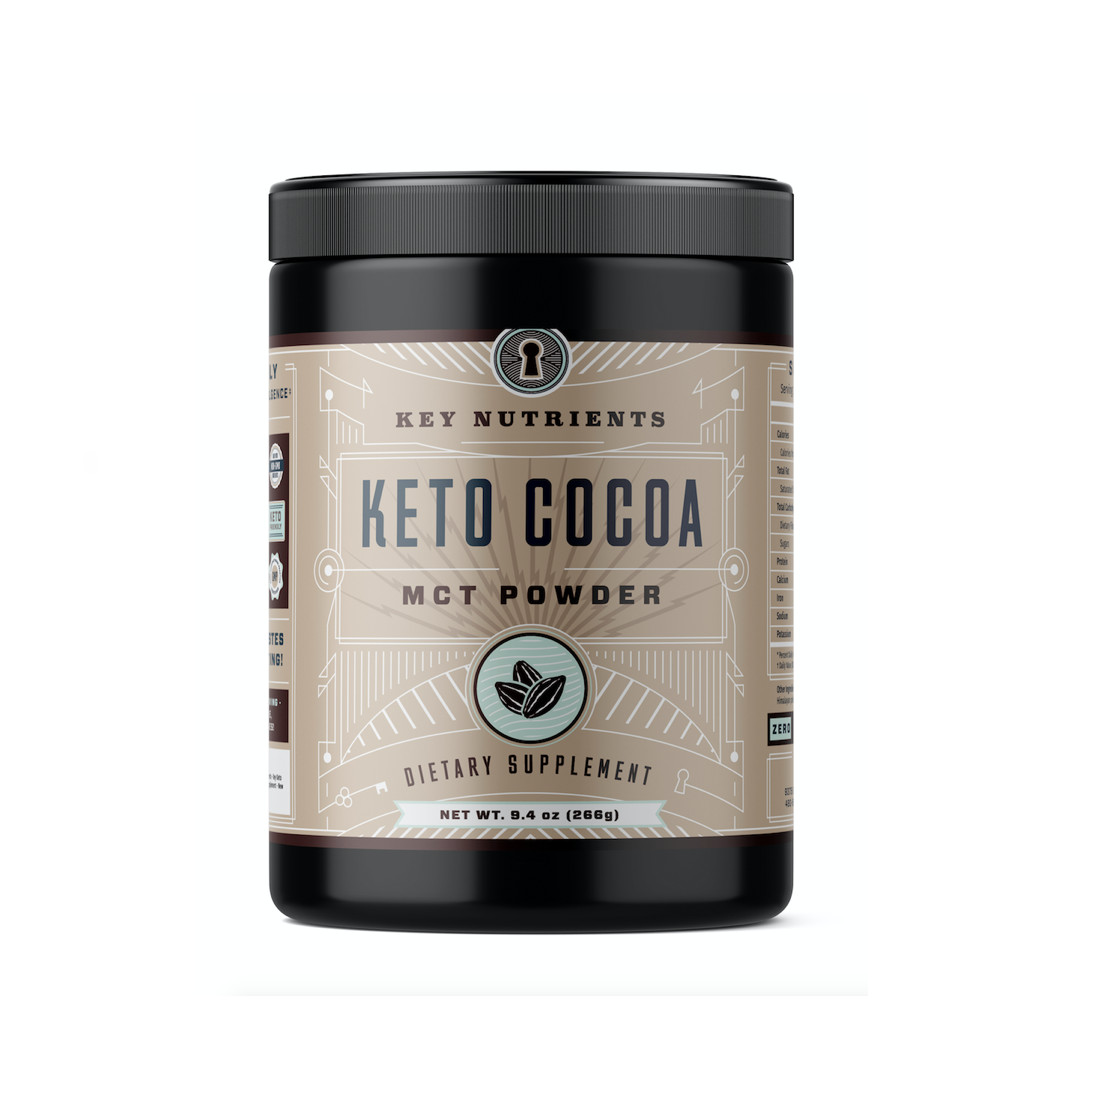 Keto Cocoa Powder
 Keto Cocoa Keto Hot Chocolate MCT Oil Powder for Low